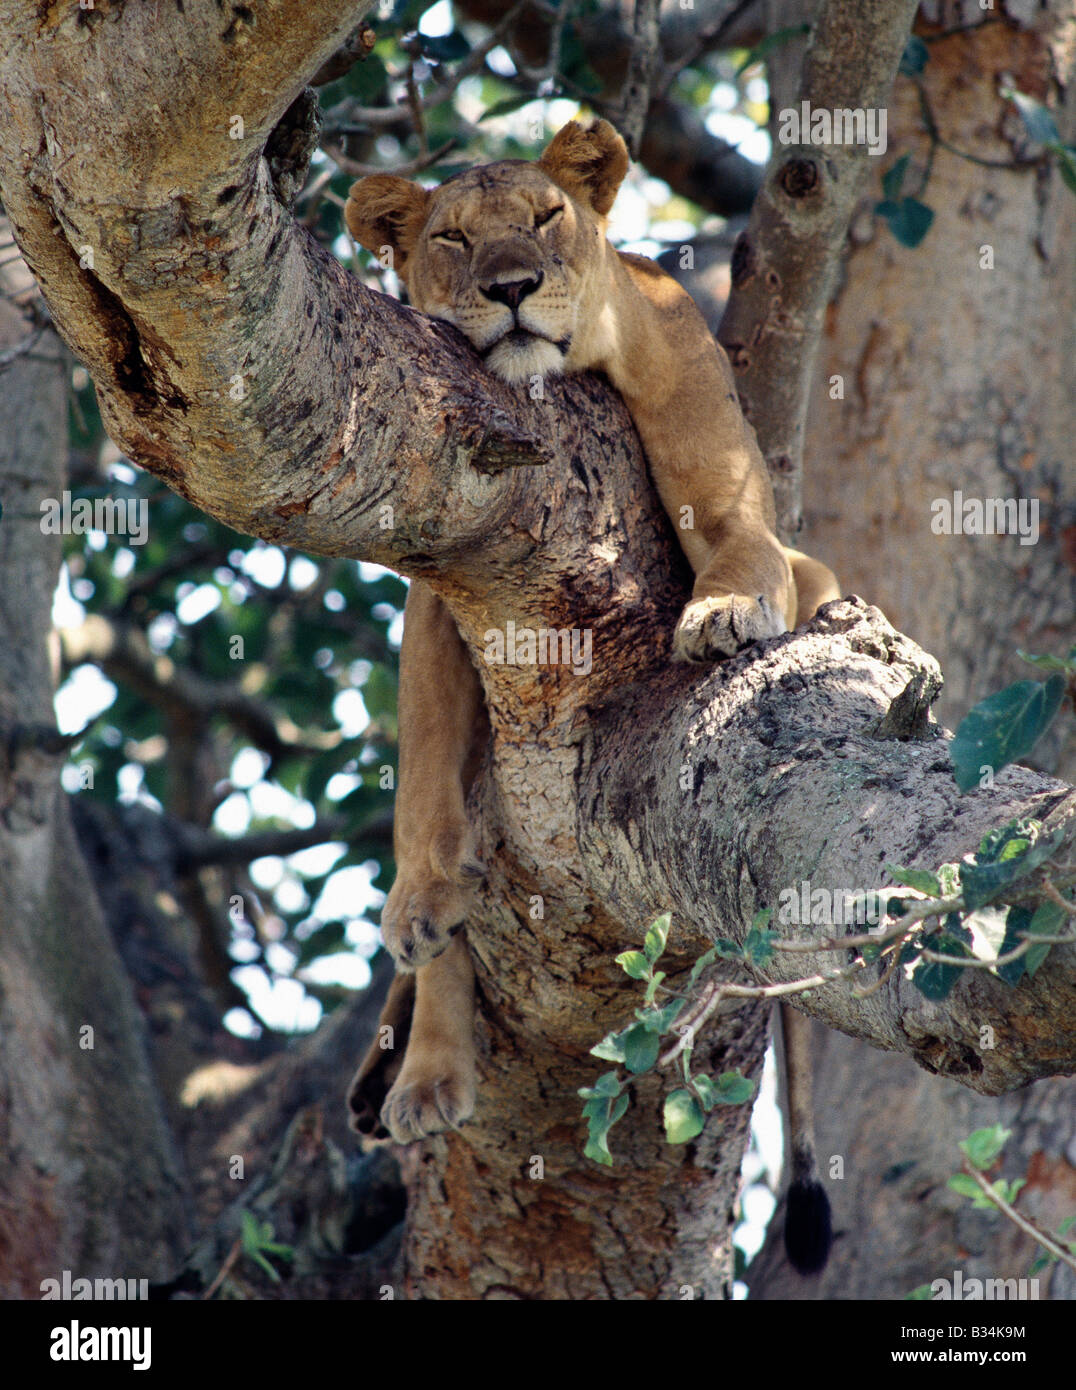 L'Ouganda, le Parc national Queen Elizabeth, Ishasha. Une lionne repose dans un figuier dans la zone d'Ishasha Parc national Queen Elizabeth. Pendant des années, Ishasha est réputé pour ses lions d'escalade Banque D'Images